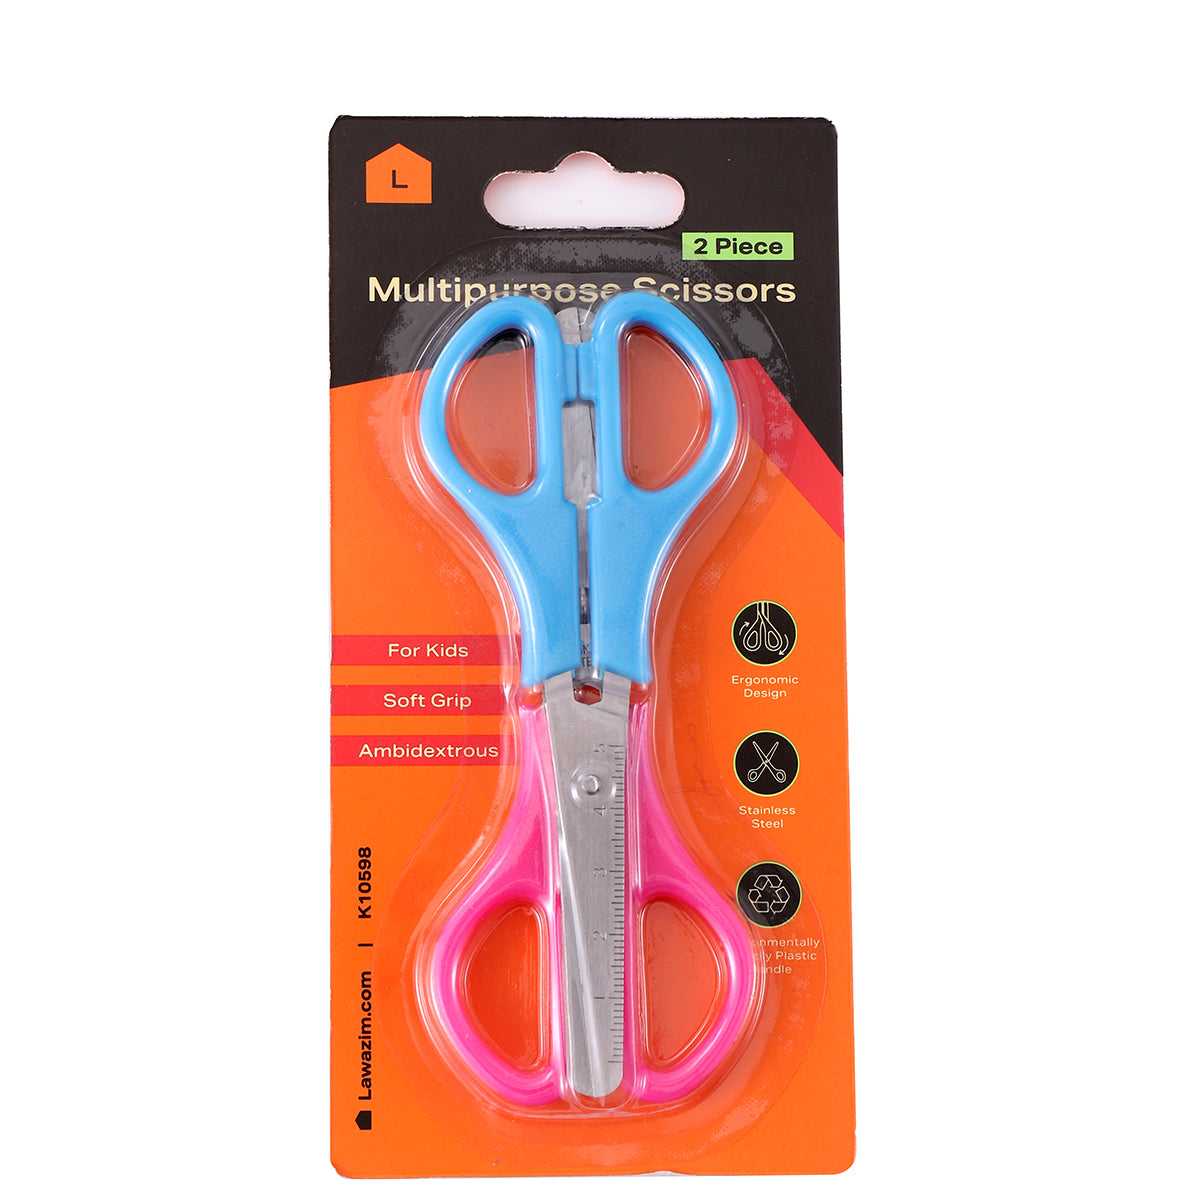 2-Piece Mutlipurpose Scissors Set